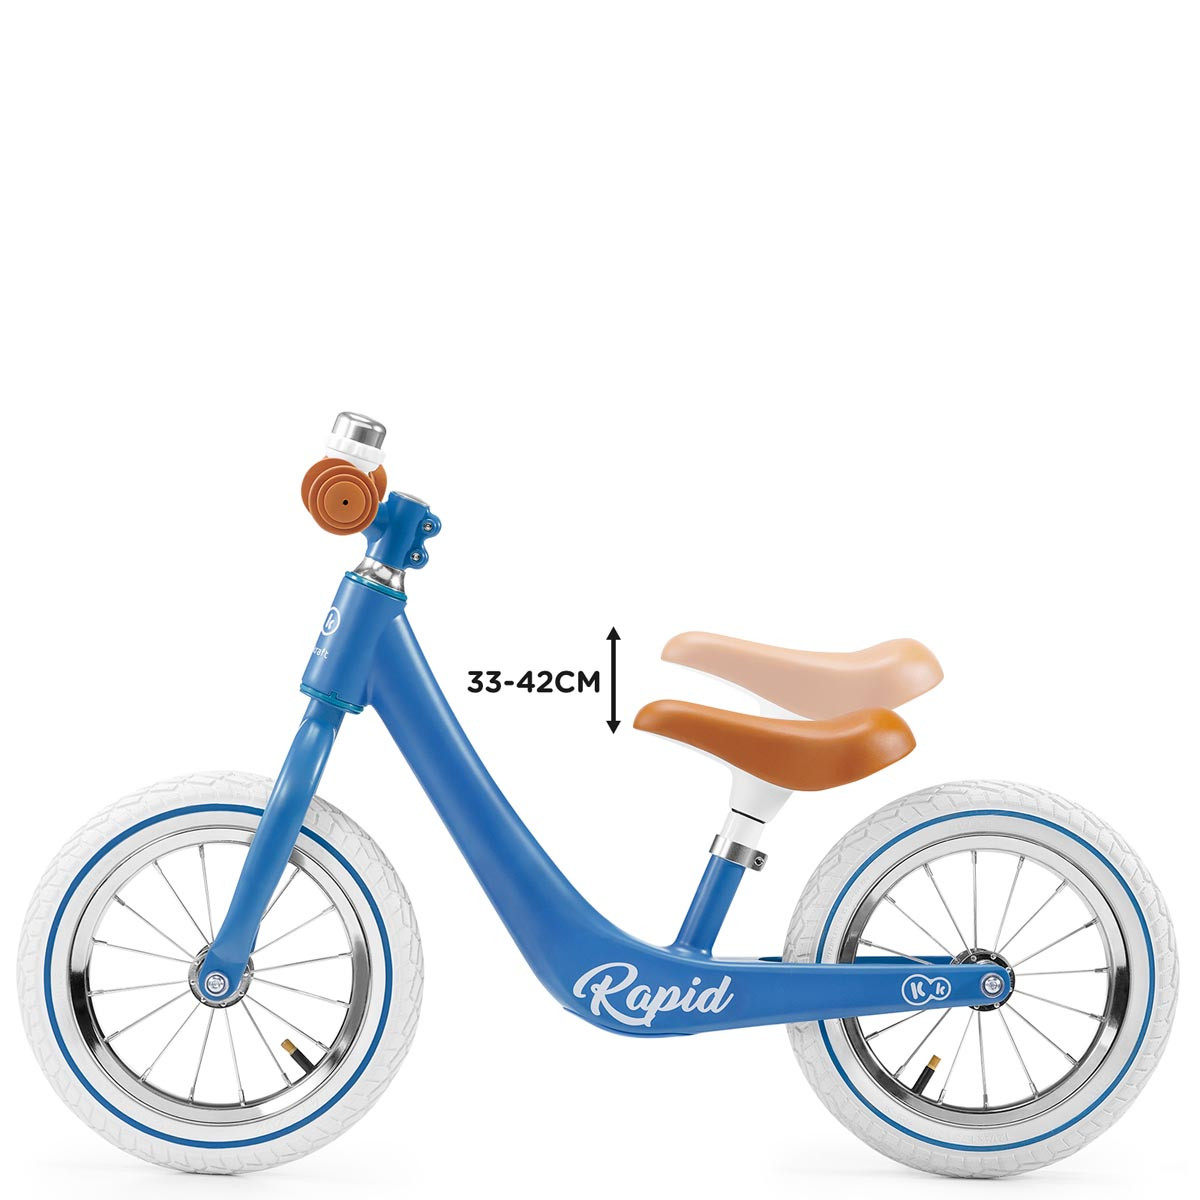 Bicicleta de equilibrio sin pedales, Kinderkraft Rapid. Asiento con un rango de ajuste de la altura (33-42 cm).